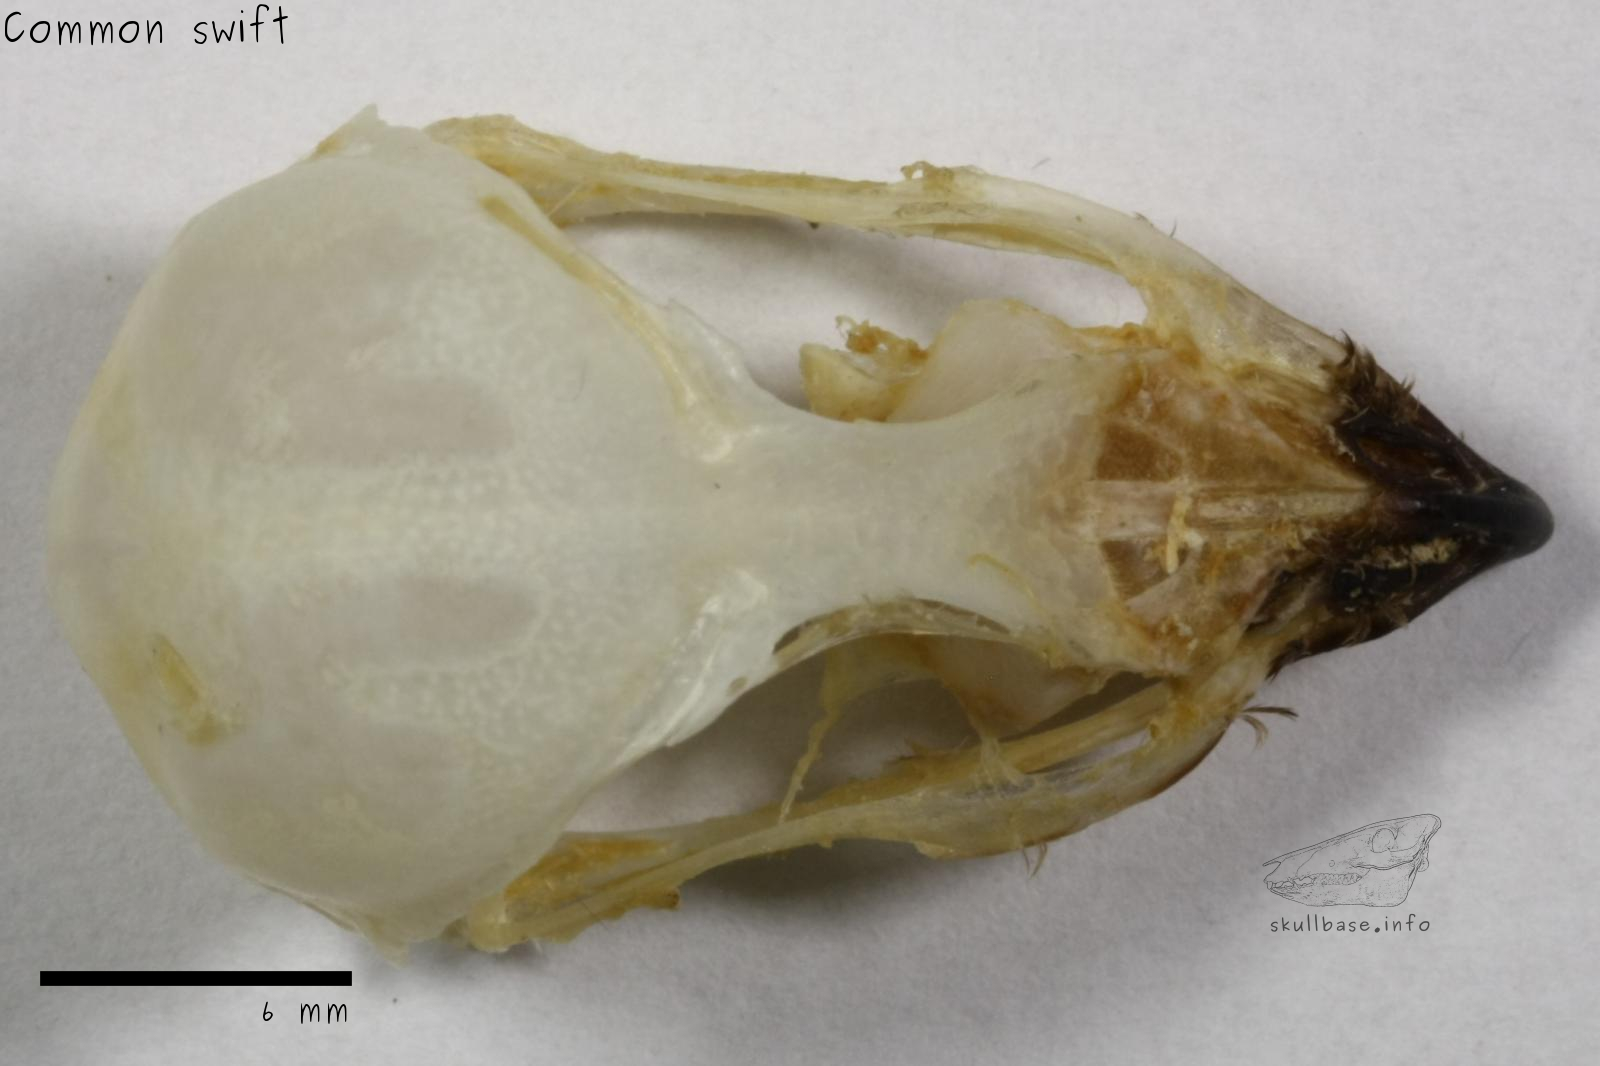 Common swift (Apus apus) skull dorsal view